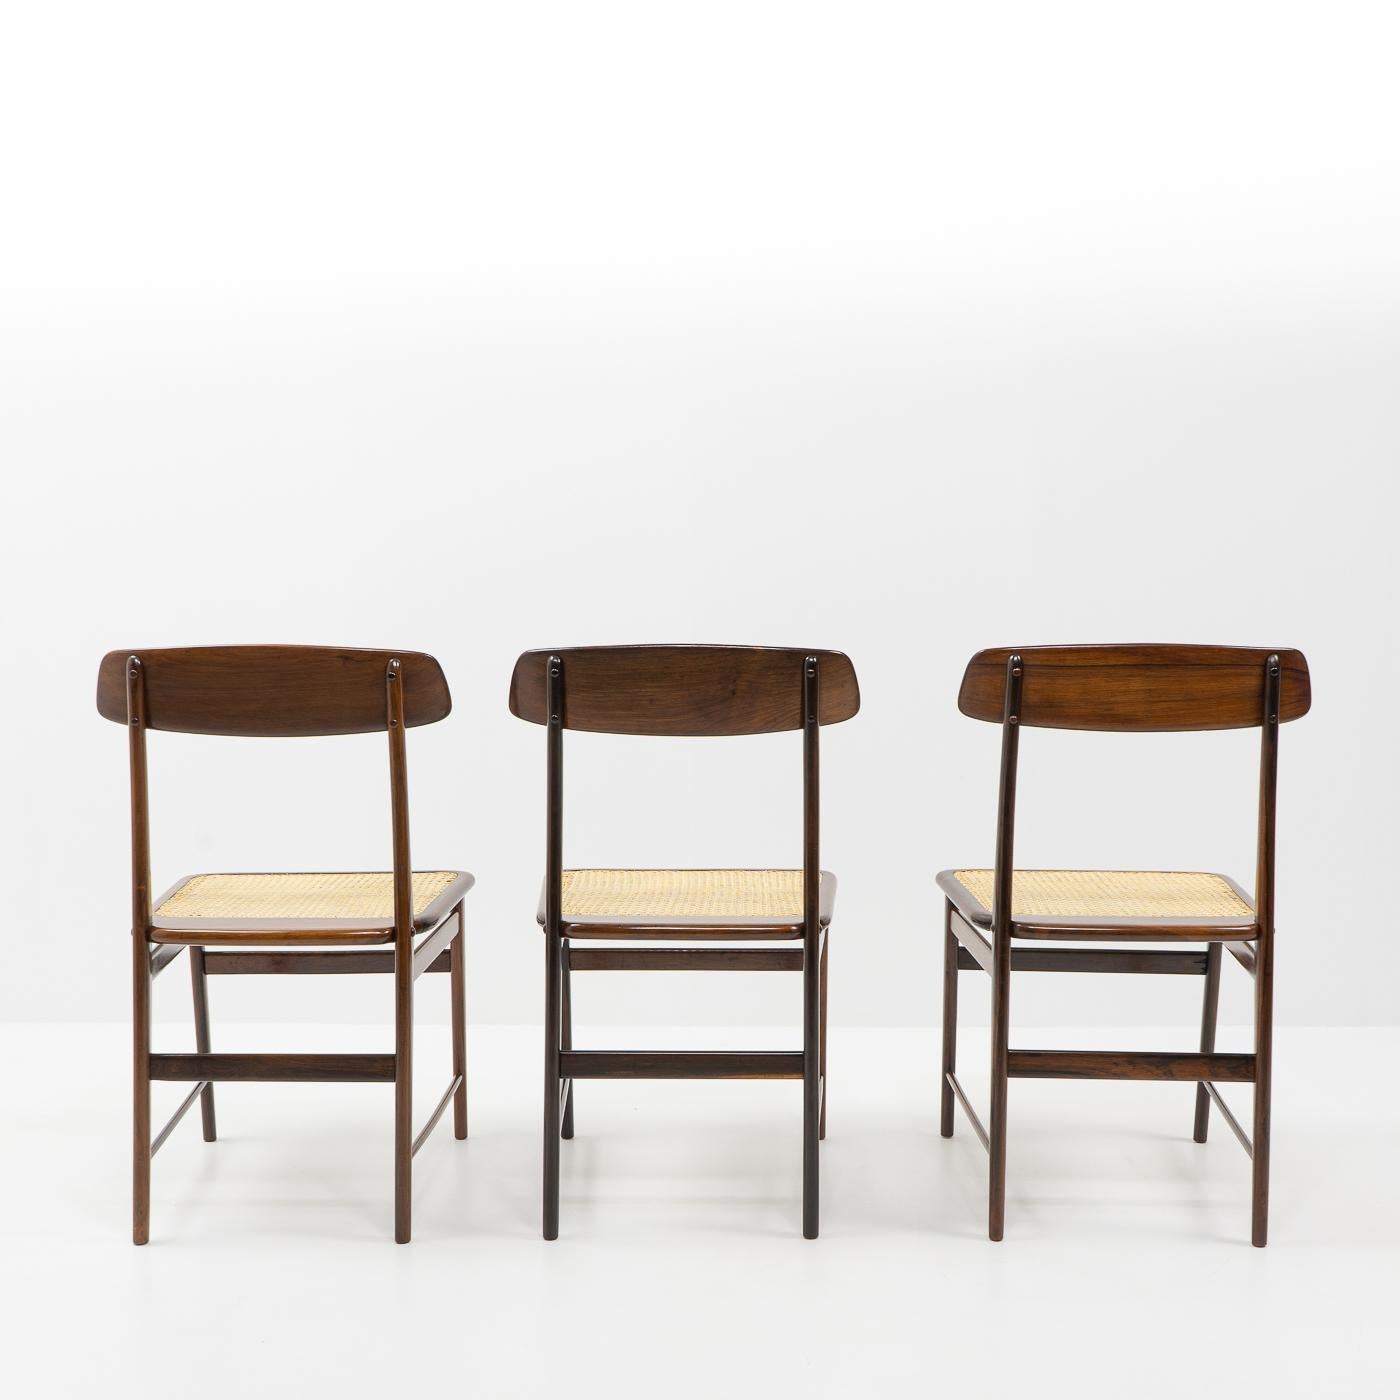 Brazilian Original Design Sergio Rodrigues, Lucio Chairs for OCA Brazil, 1950s For Sale